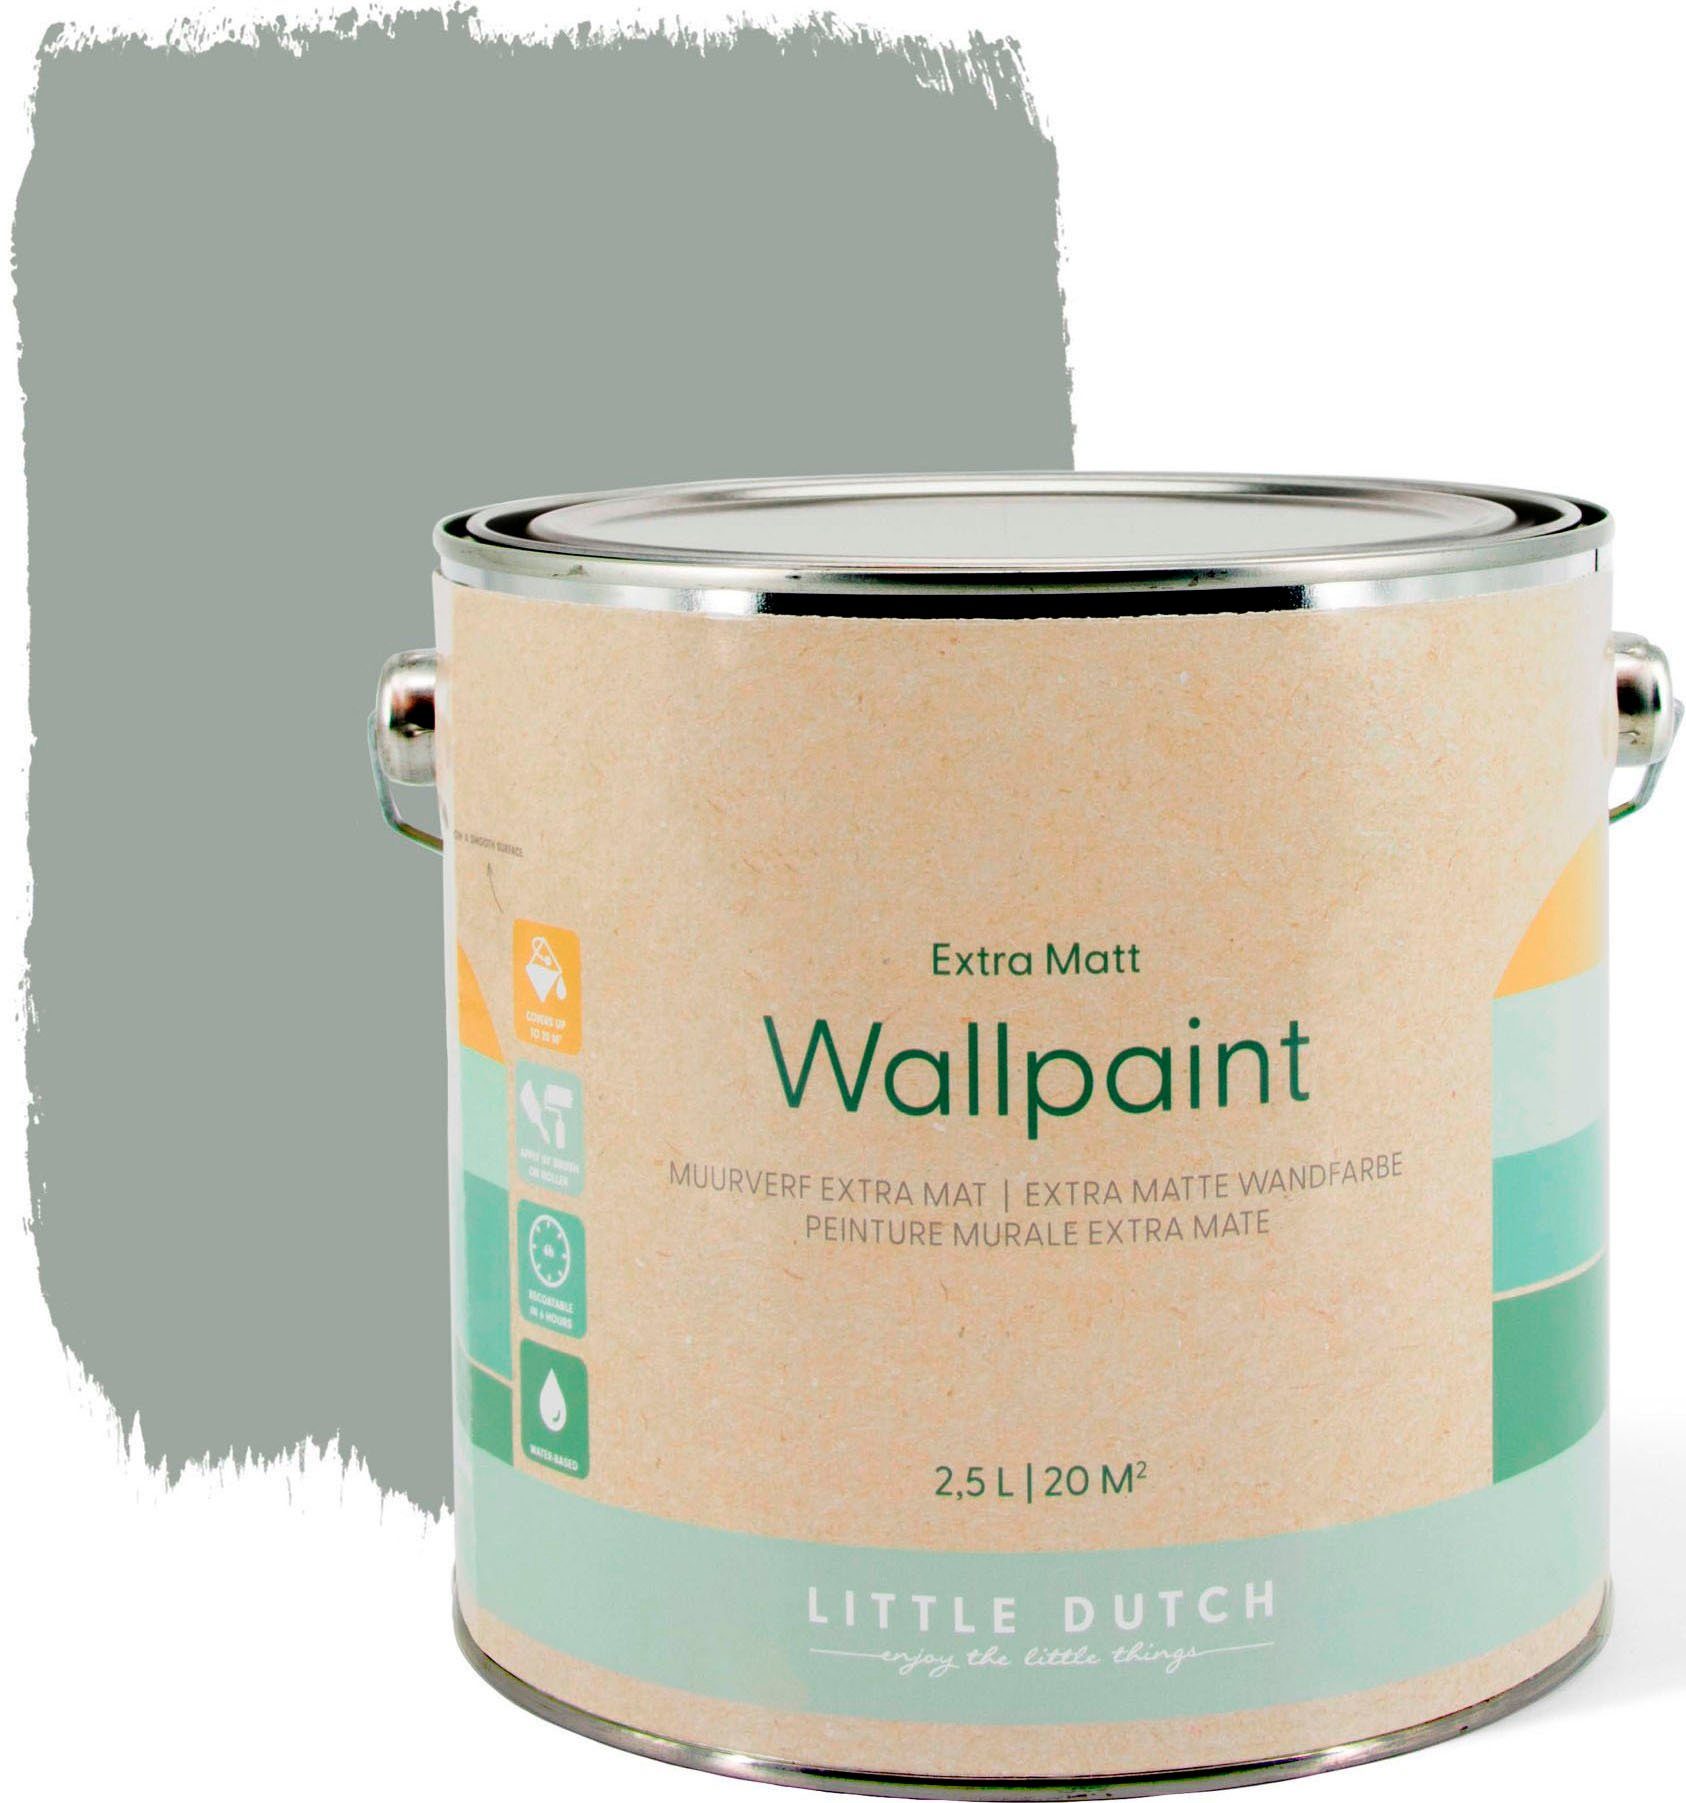 LITTLE DUTCH Wandfarbe Kinderzimmer matt, für extra Wallpaint, Dusty und Grau geeignet hochdeckend waschbeständig